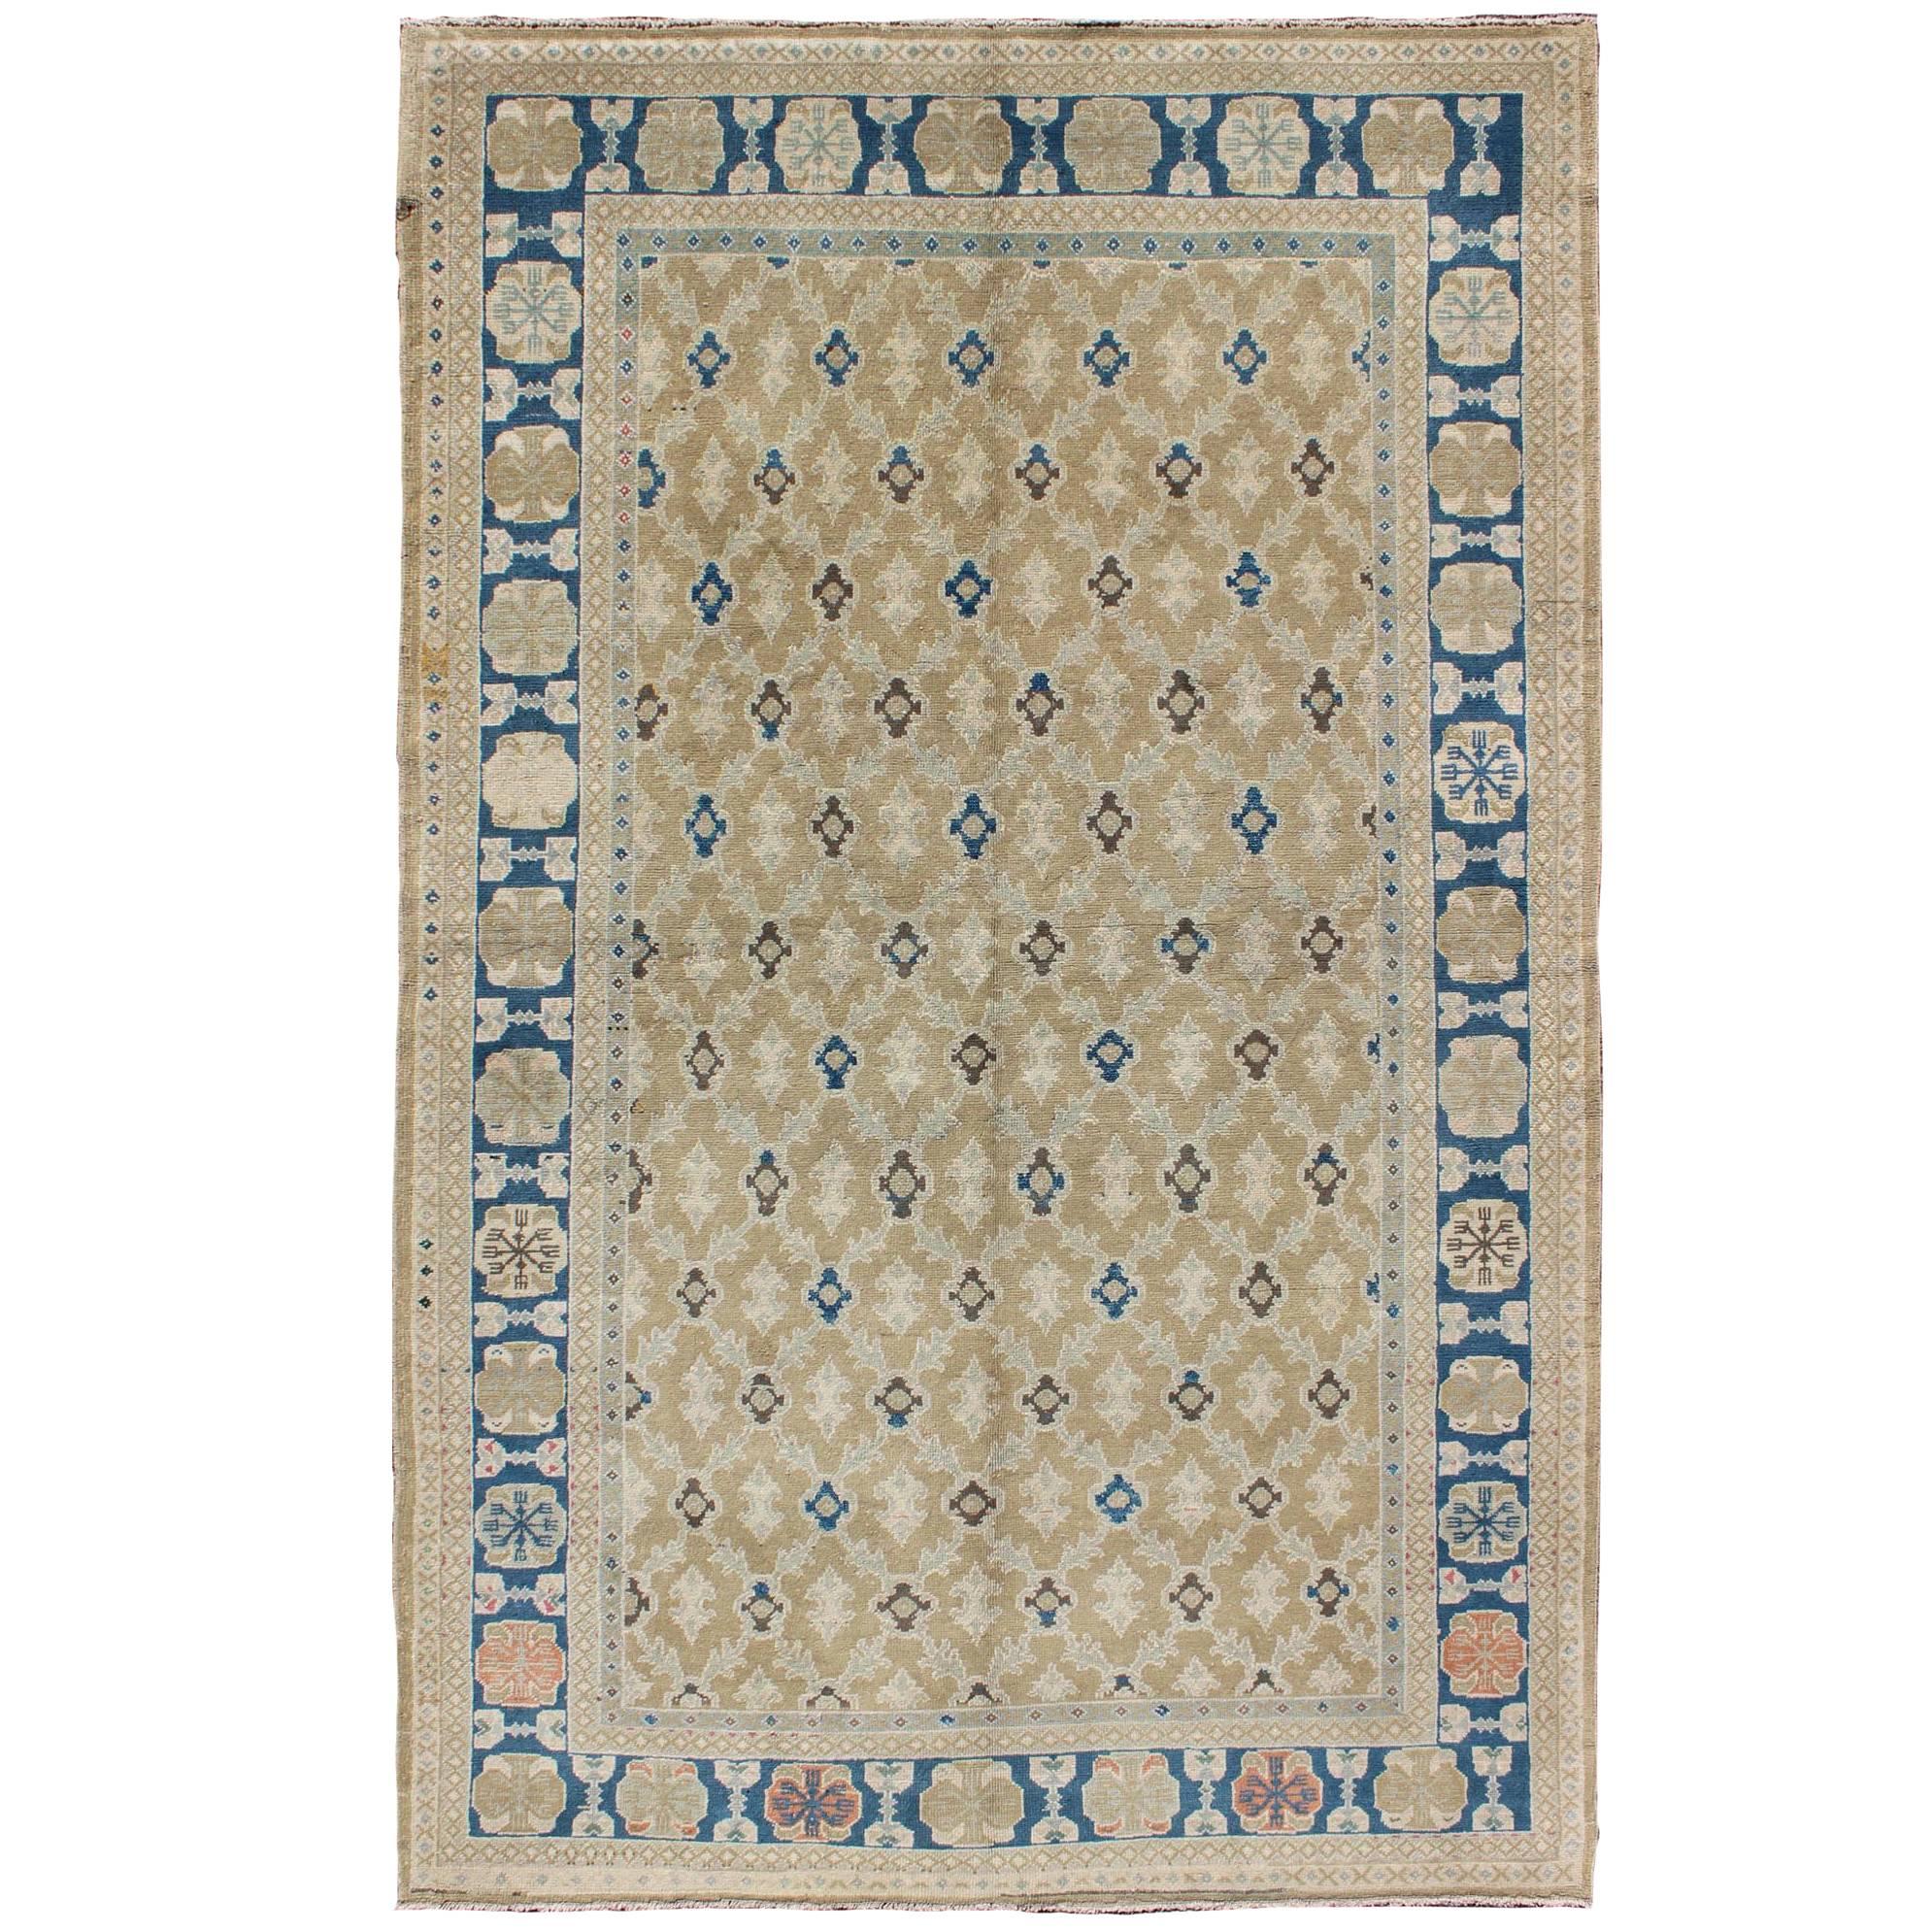 Feiner türkischer Sivas-Teppich in Tan, Taupe, Blau und Braun mit geometrischem Muster